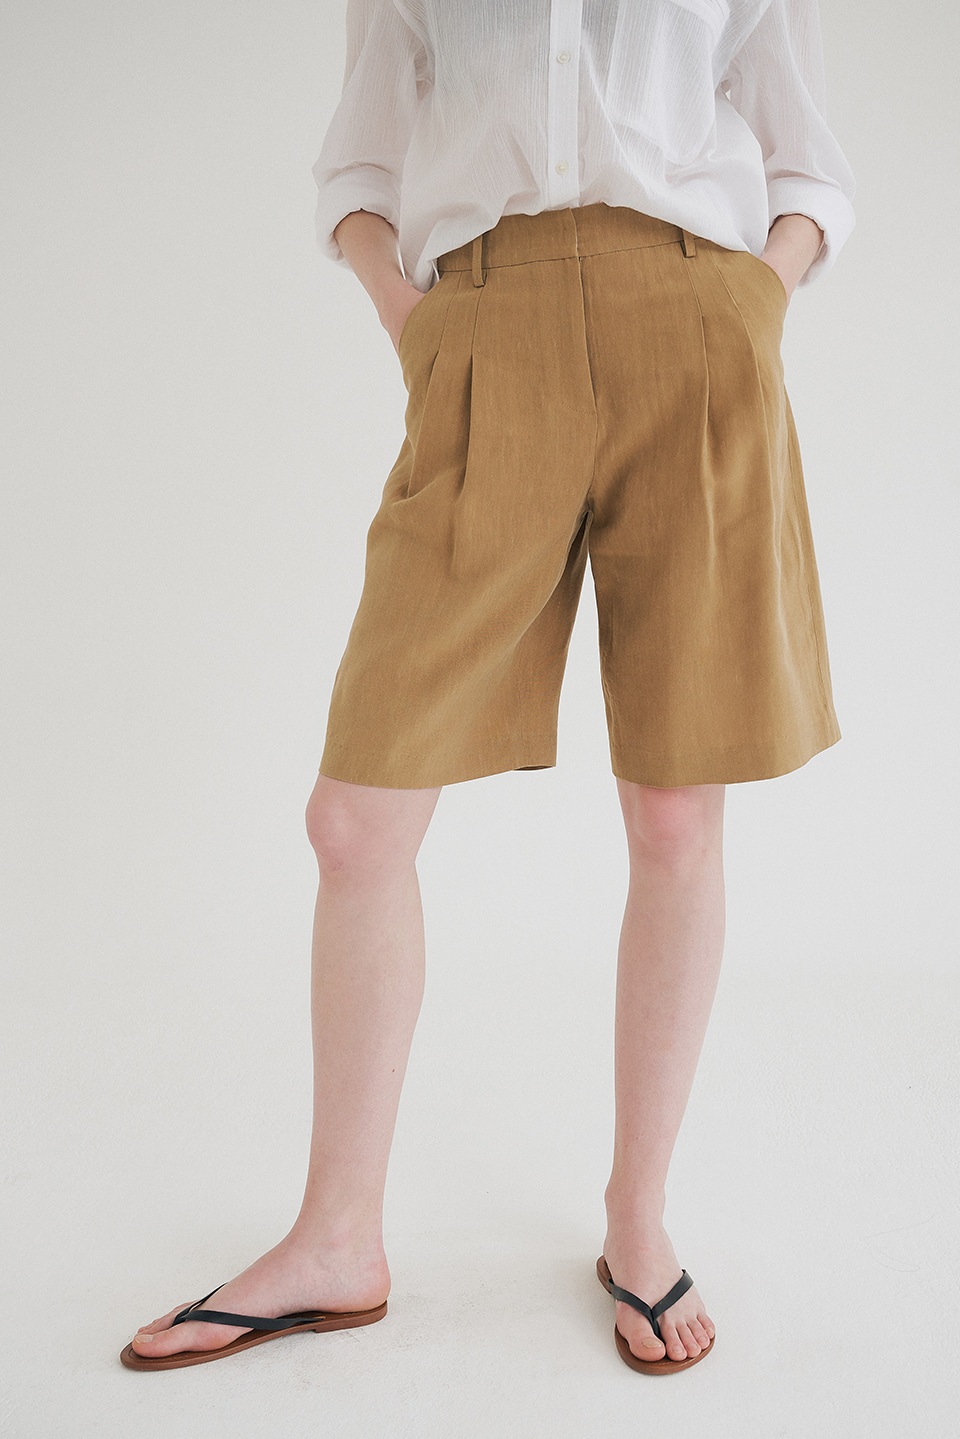 linen bermuda pants (beige)